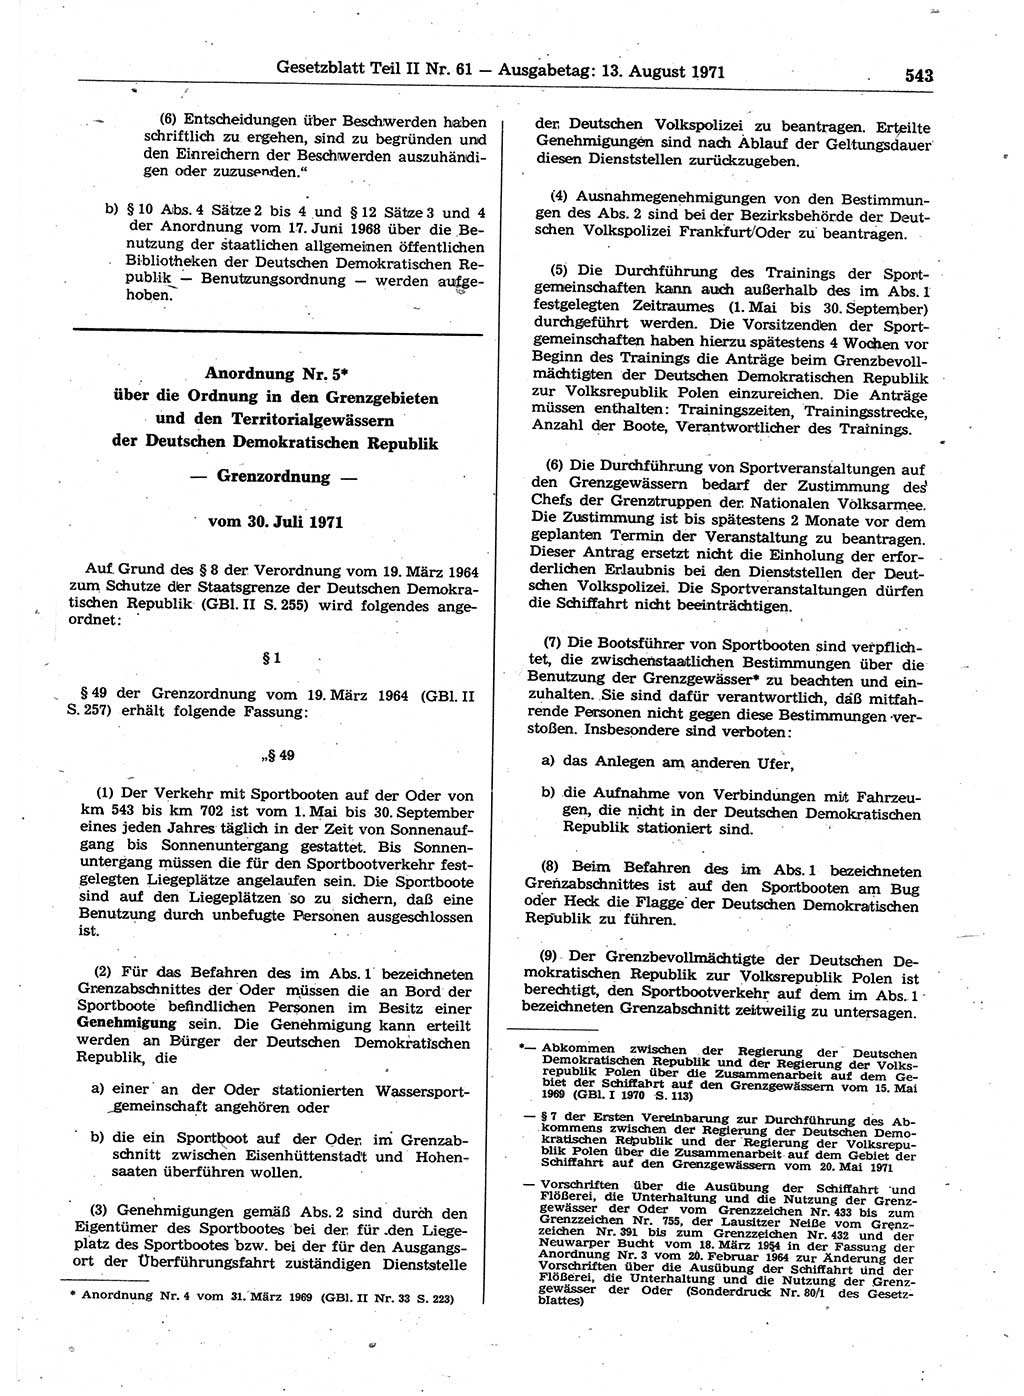 Gesetzblatt (GBl.) der Deutschen Demokratischen Republik (DDR) Teil ⅠⅠ 1971, Seite 543 (GBl. DDR ⅠⅠ 1971, S. 543)